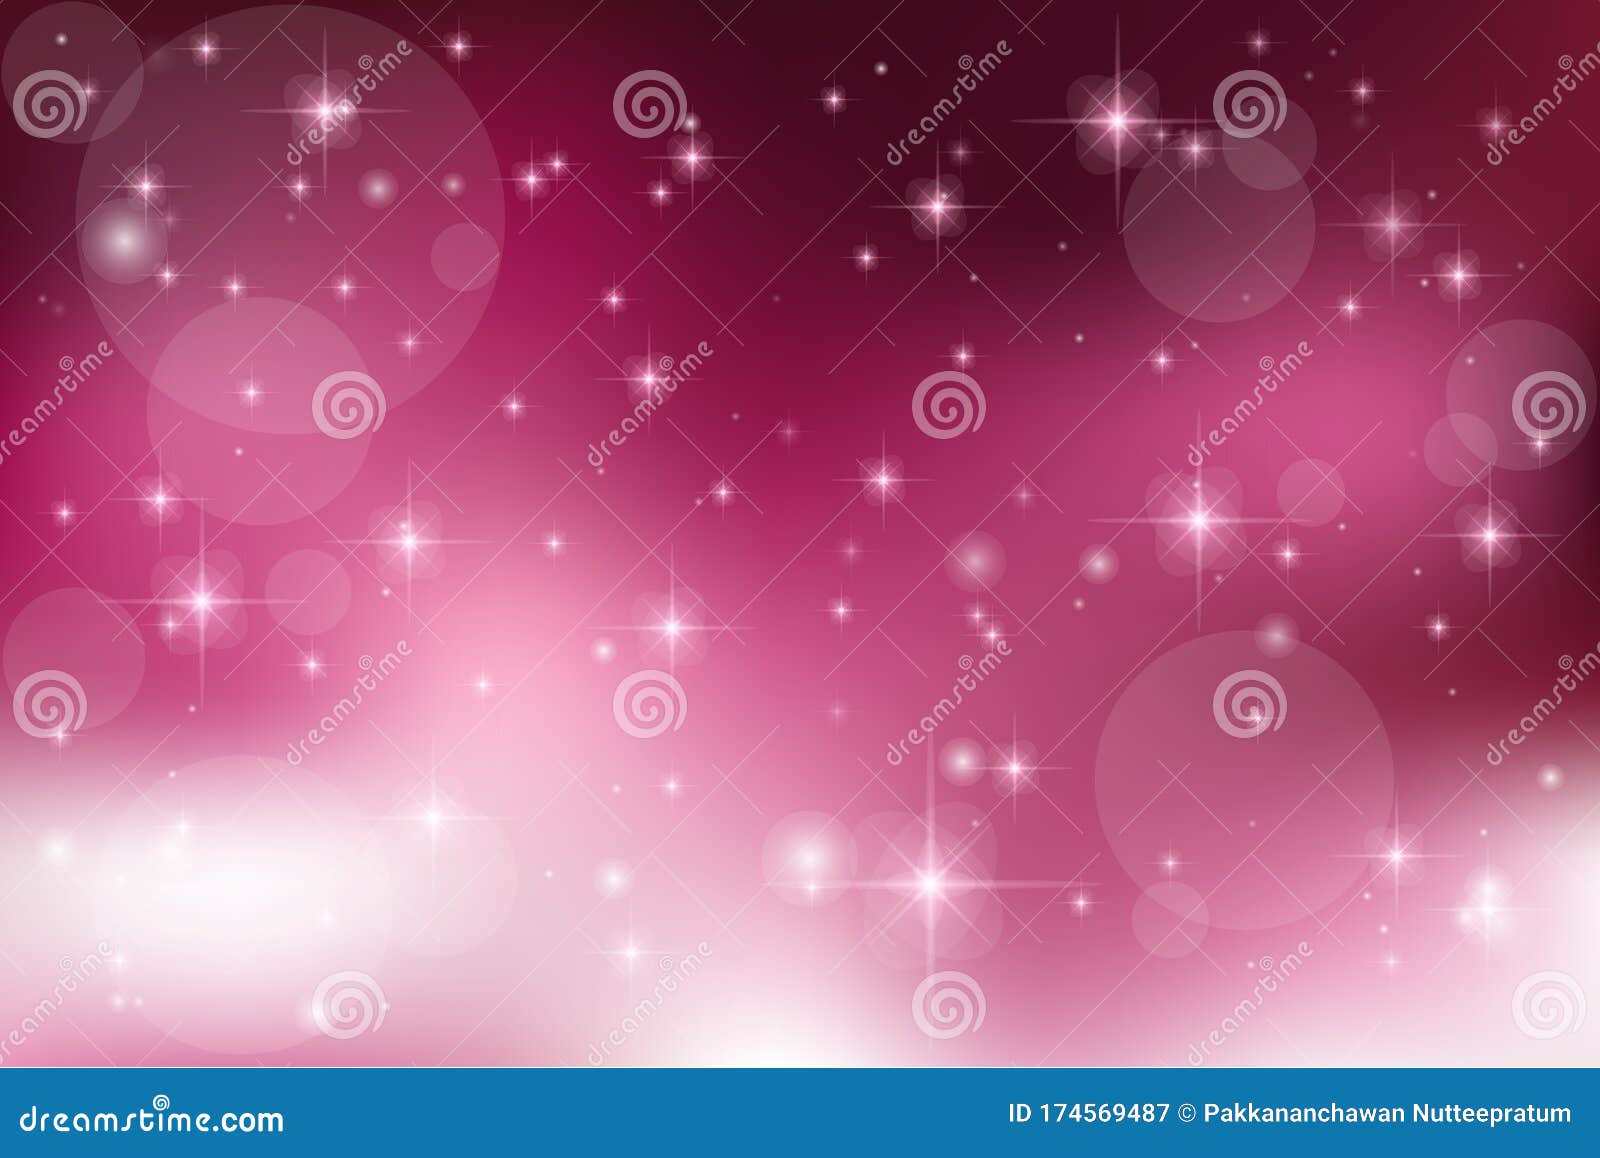 Galaxia Fantasía Fondo De Estrella Brillante Lindo En El Cielo De Color Rosa  Pastel. Ilustración del Vector - Ilustración de unicornio, universo:  174569487